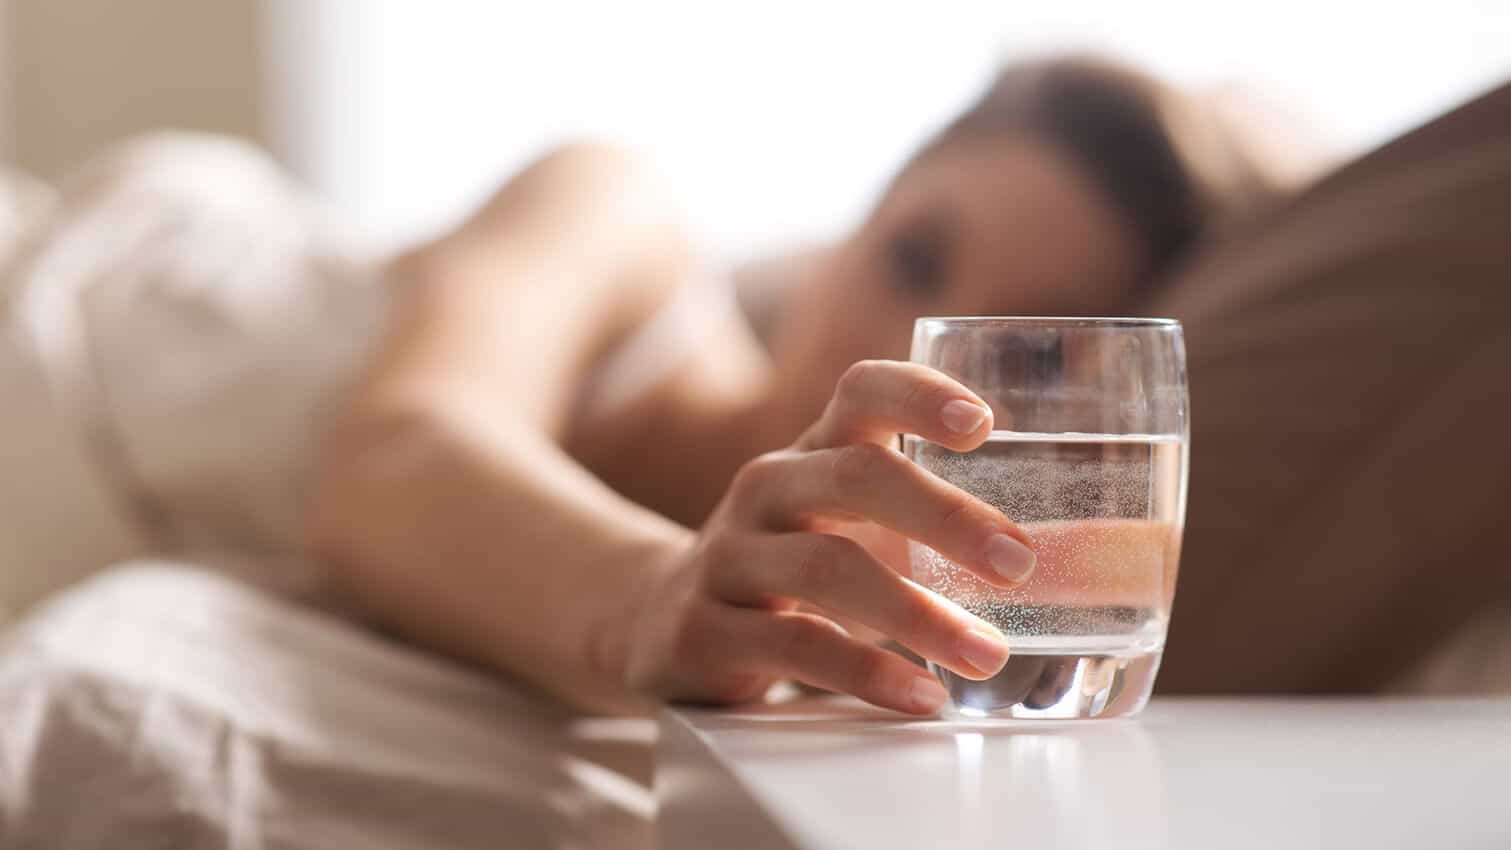 شرب كوب أو كوبين من الماء عند النهوض من النوم